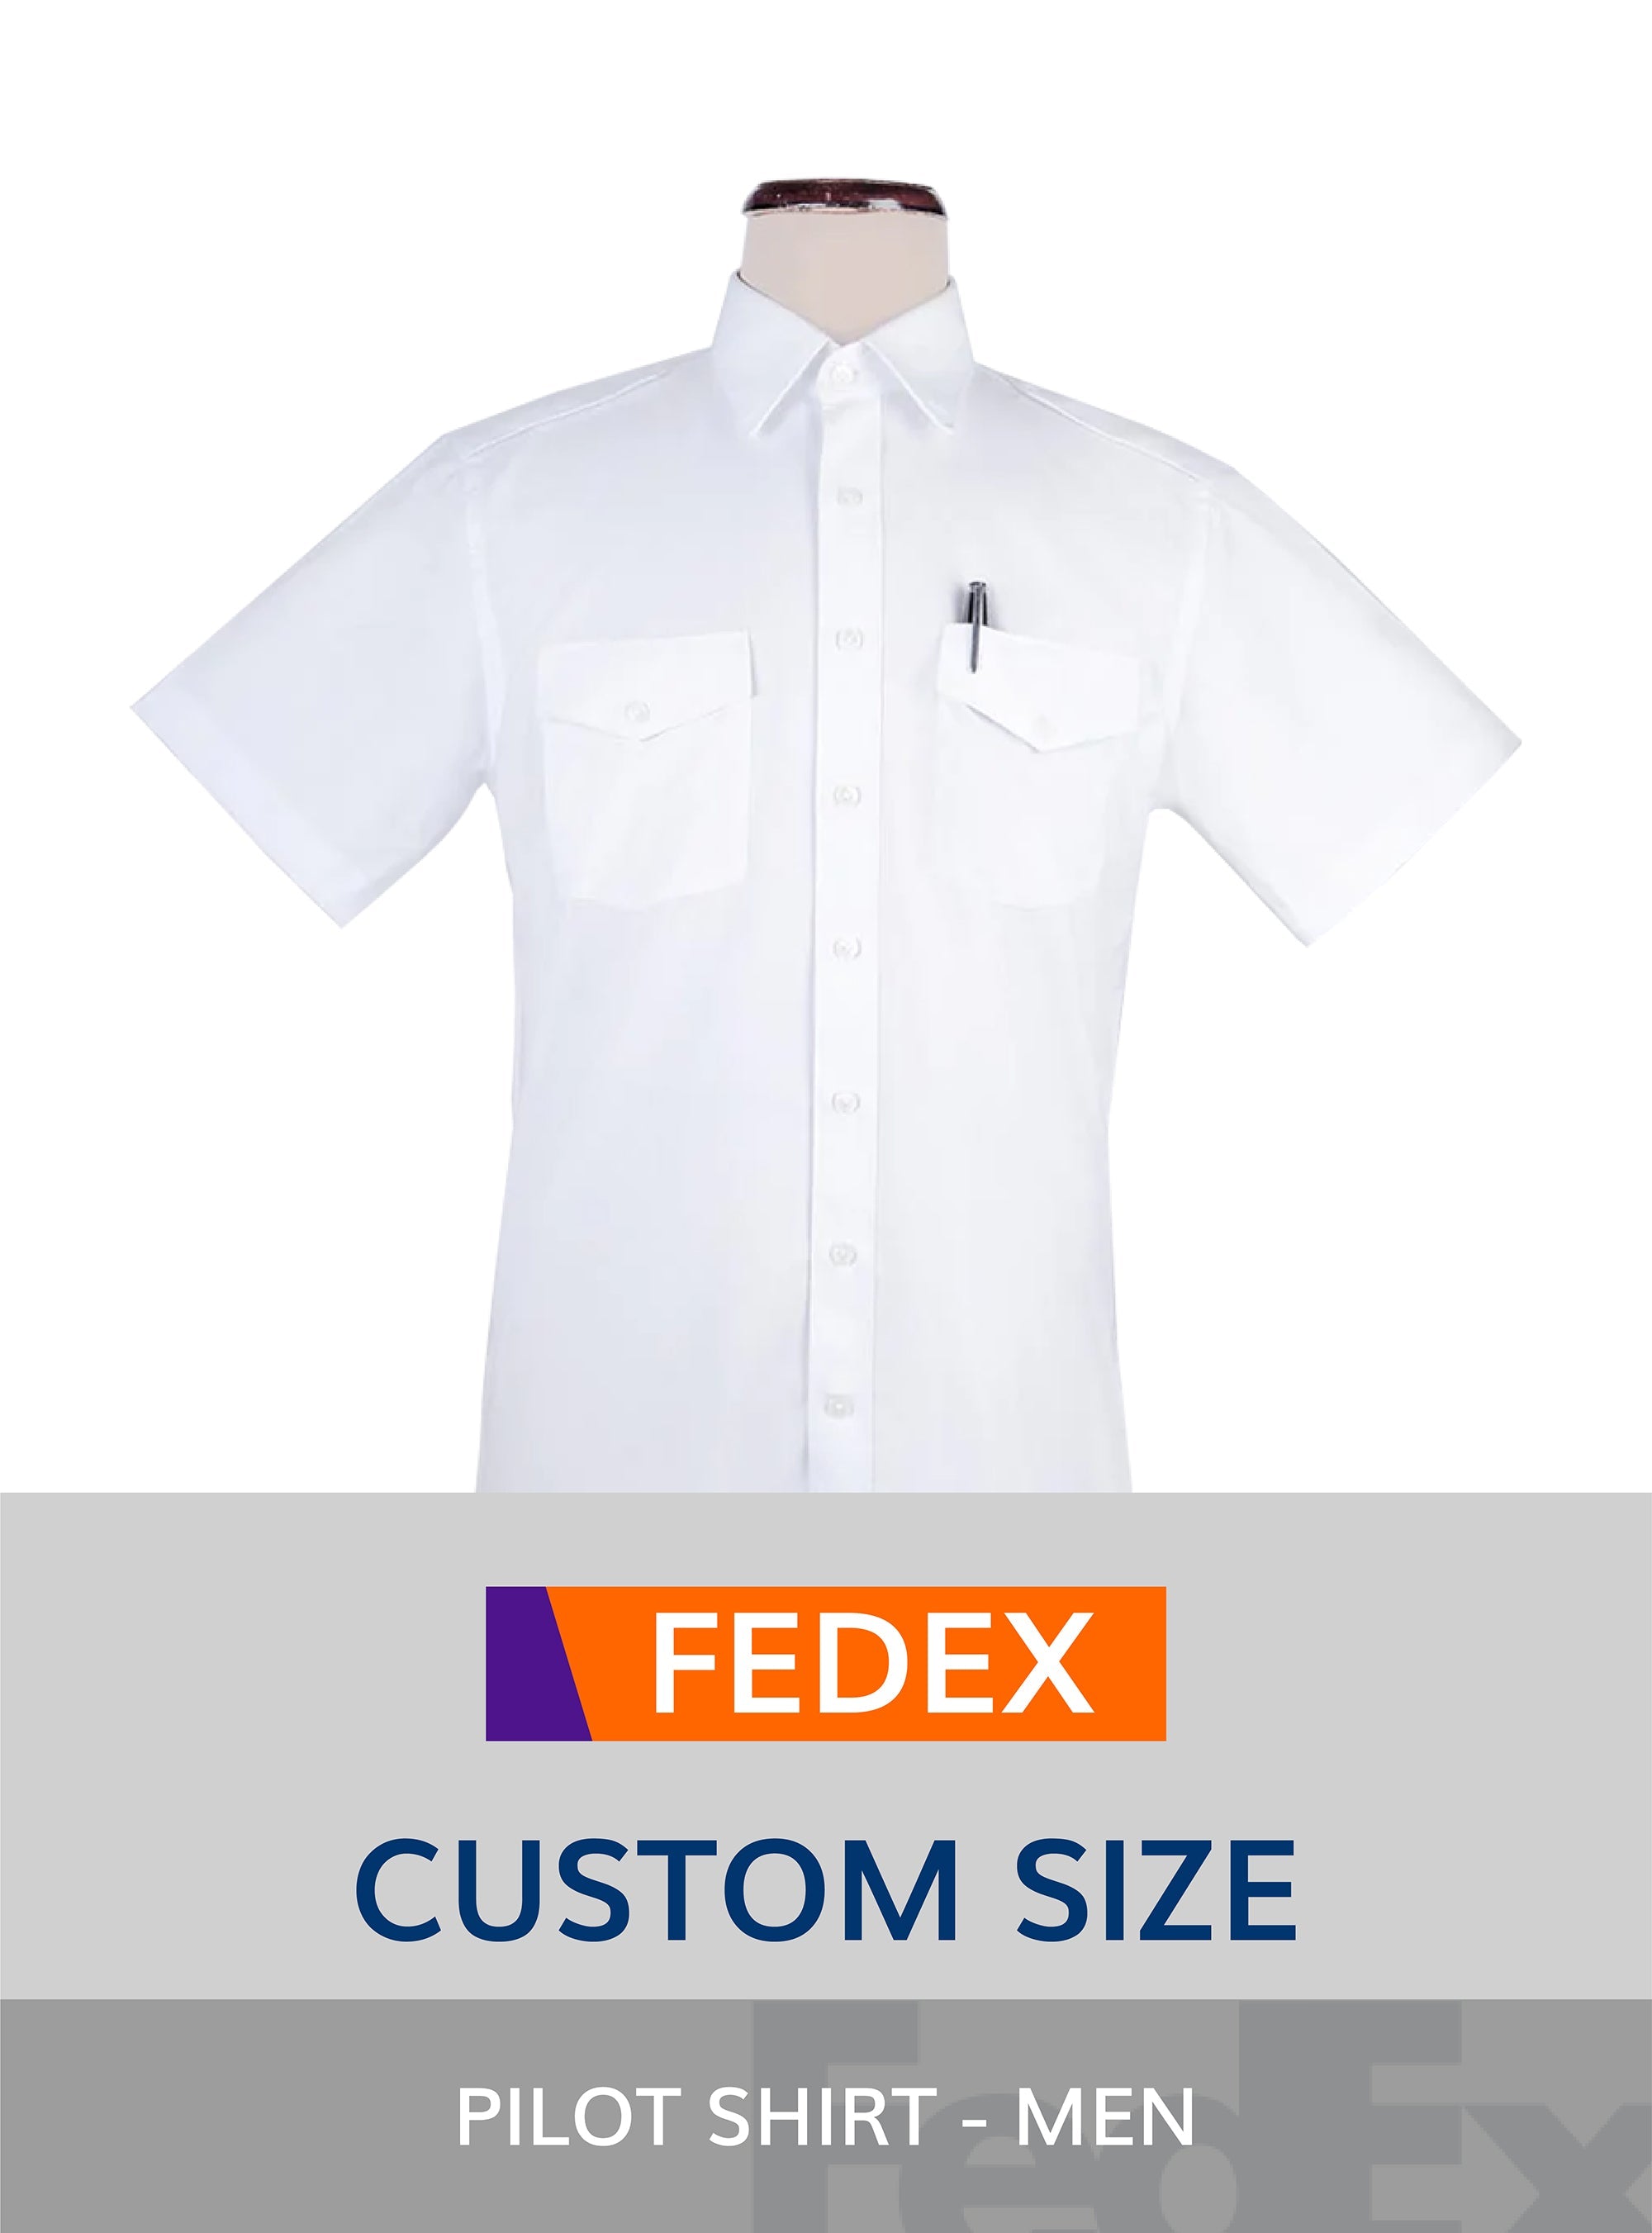 FEDEX Custom Size Pilot Shirt for Men